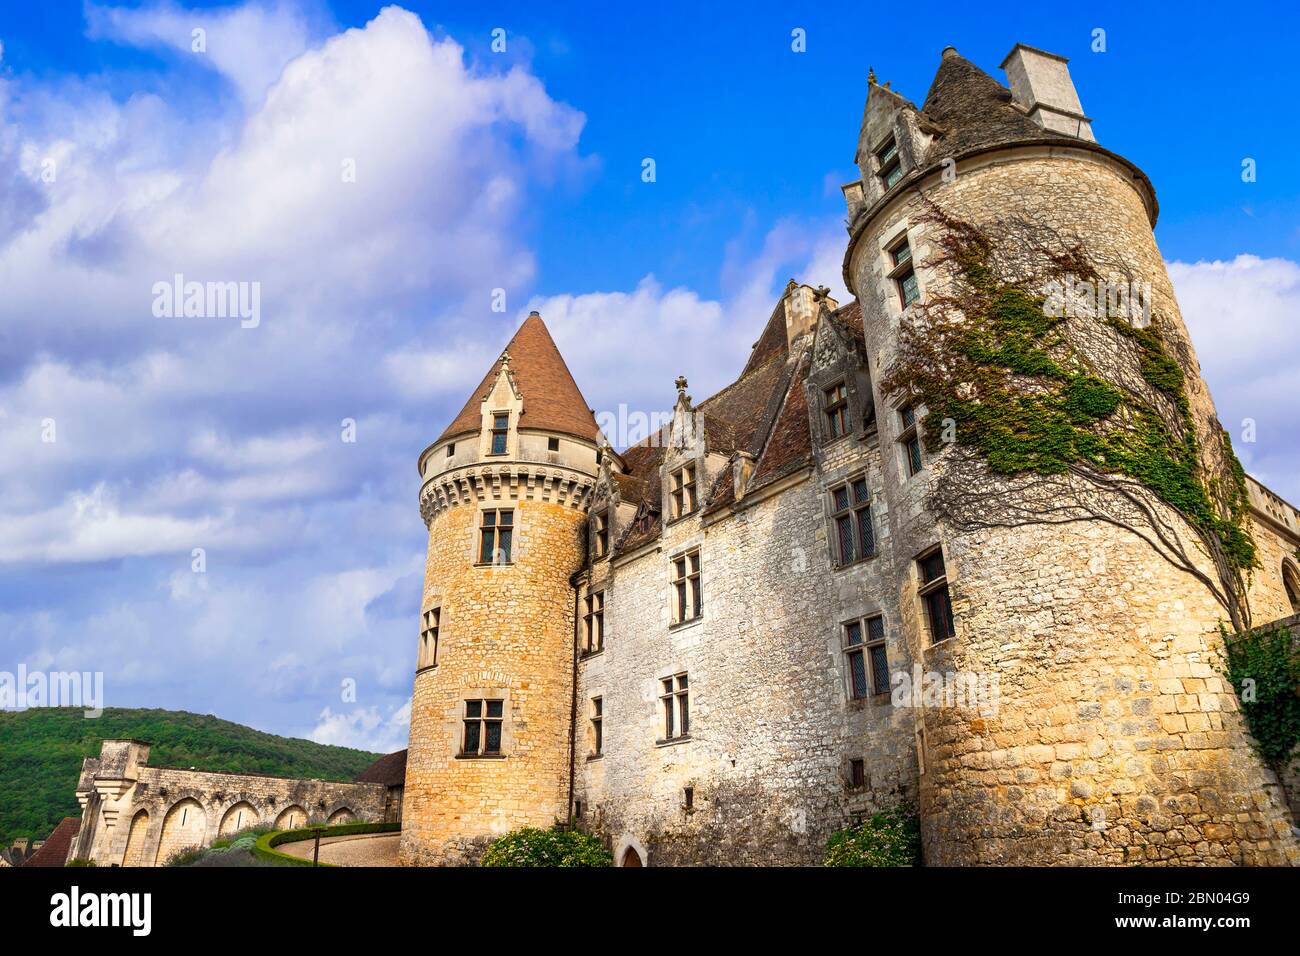 Voyage et monuments de France. Magnifique château médiéval Château des Milandes - Dordogne Banque D'Images